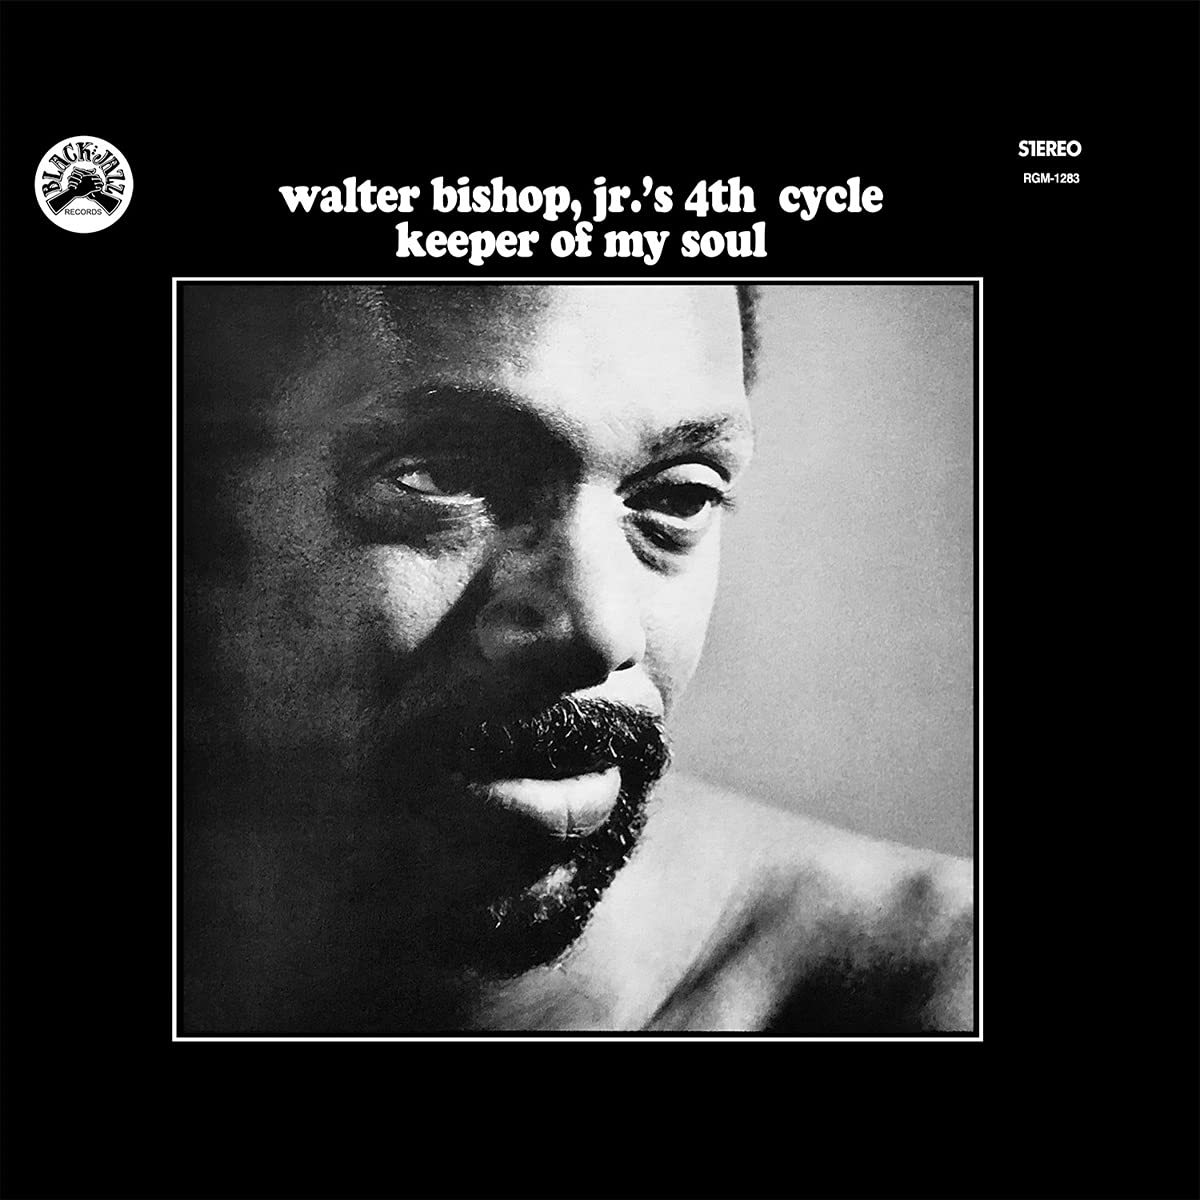 WALTER BISHOP JR'S 4TH CYCLE - KEEPER OF MY SOUL Vinyl LP